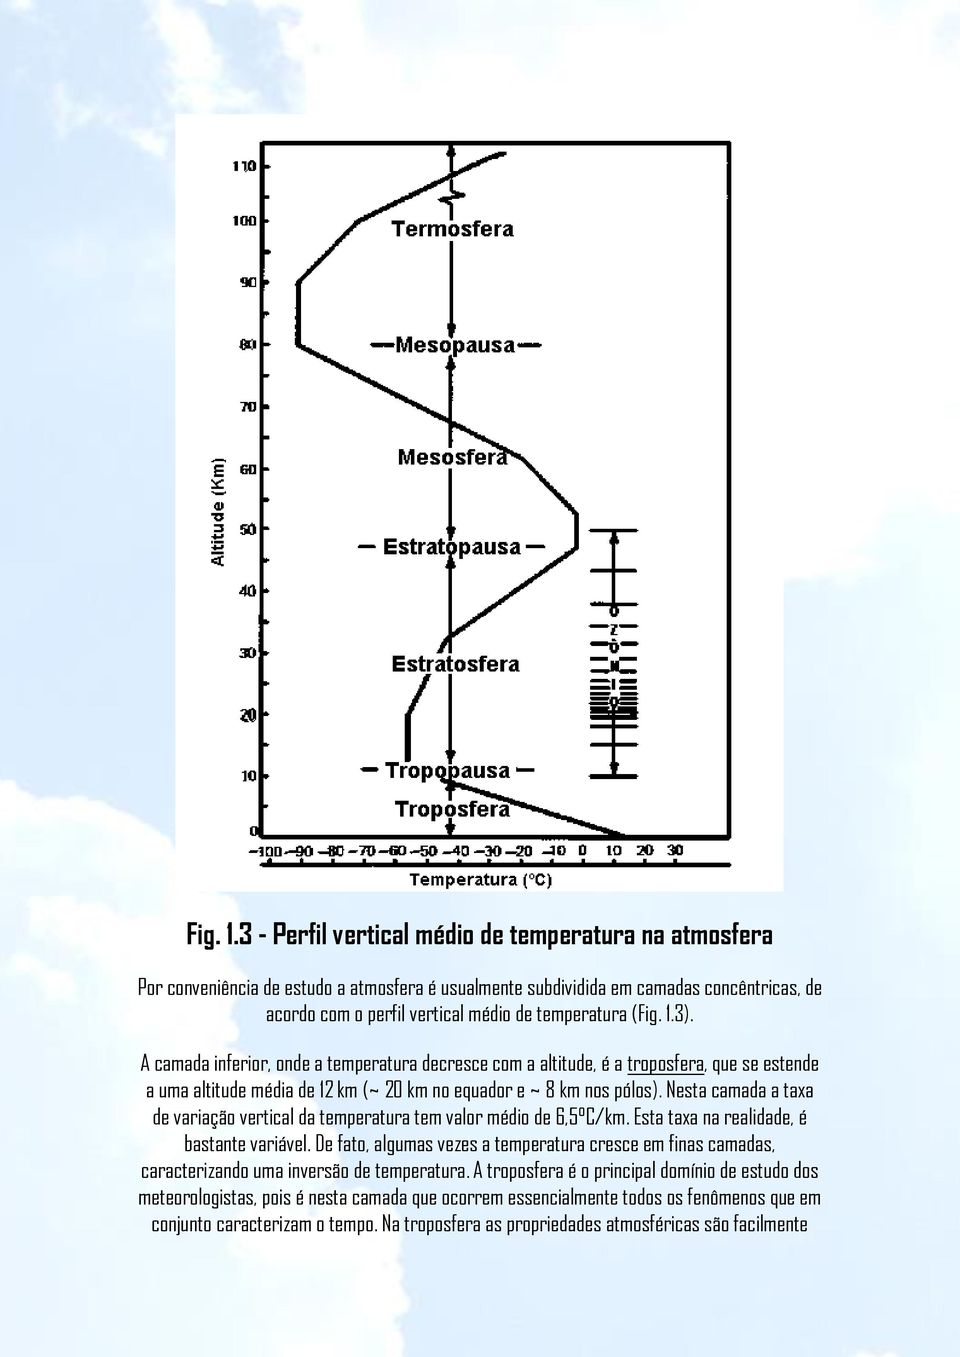 A camada inferior, onde a temperatura decresce com a altitude, é a troposfera, que se estende a uma altitude média de 12 km (~ 20 km no equador e ~ 8 km nos pólos).